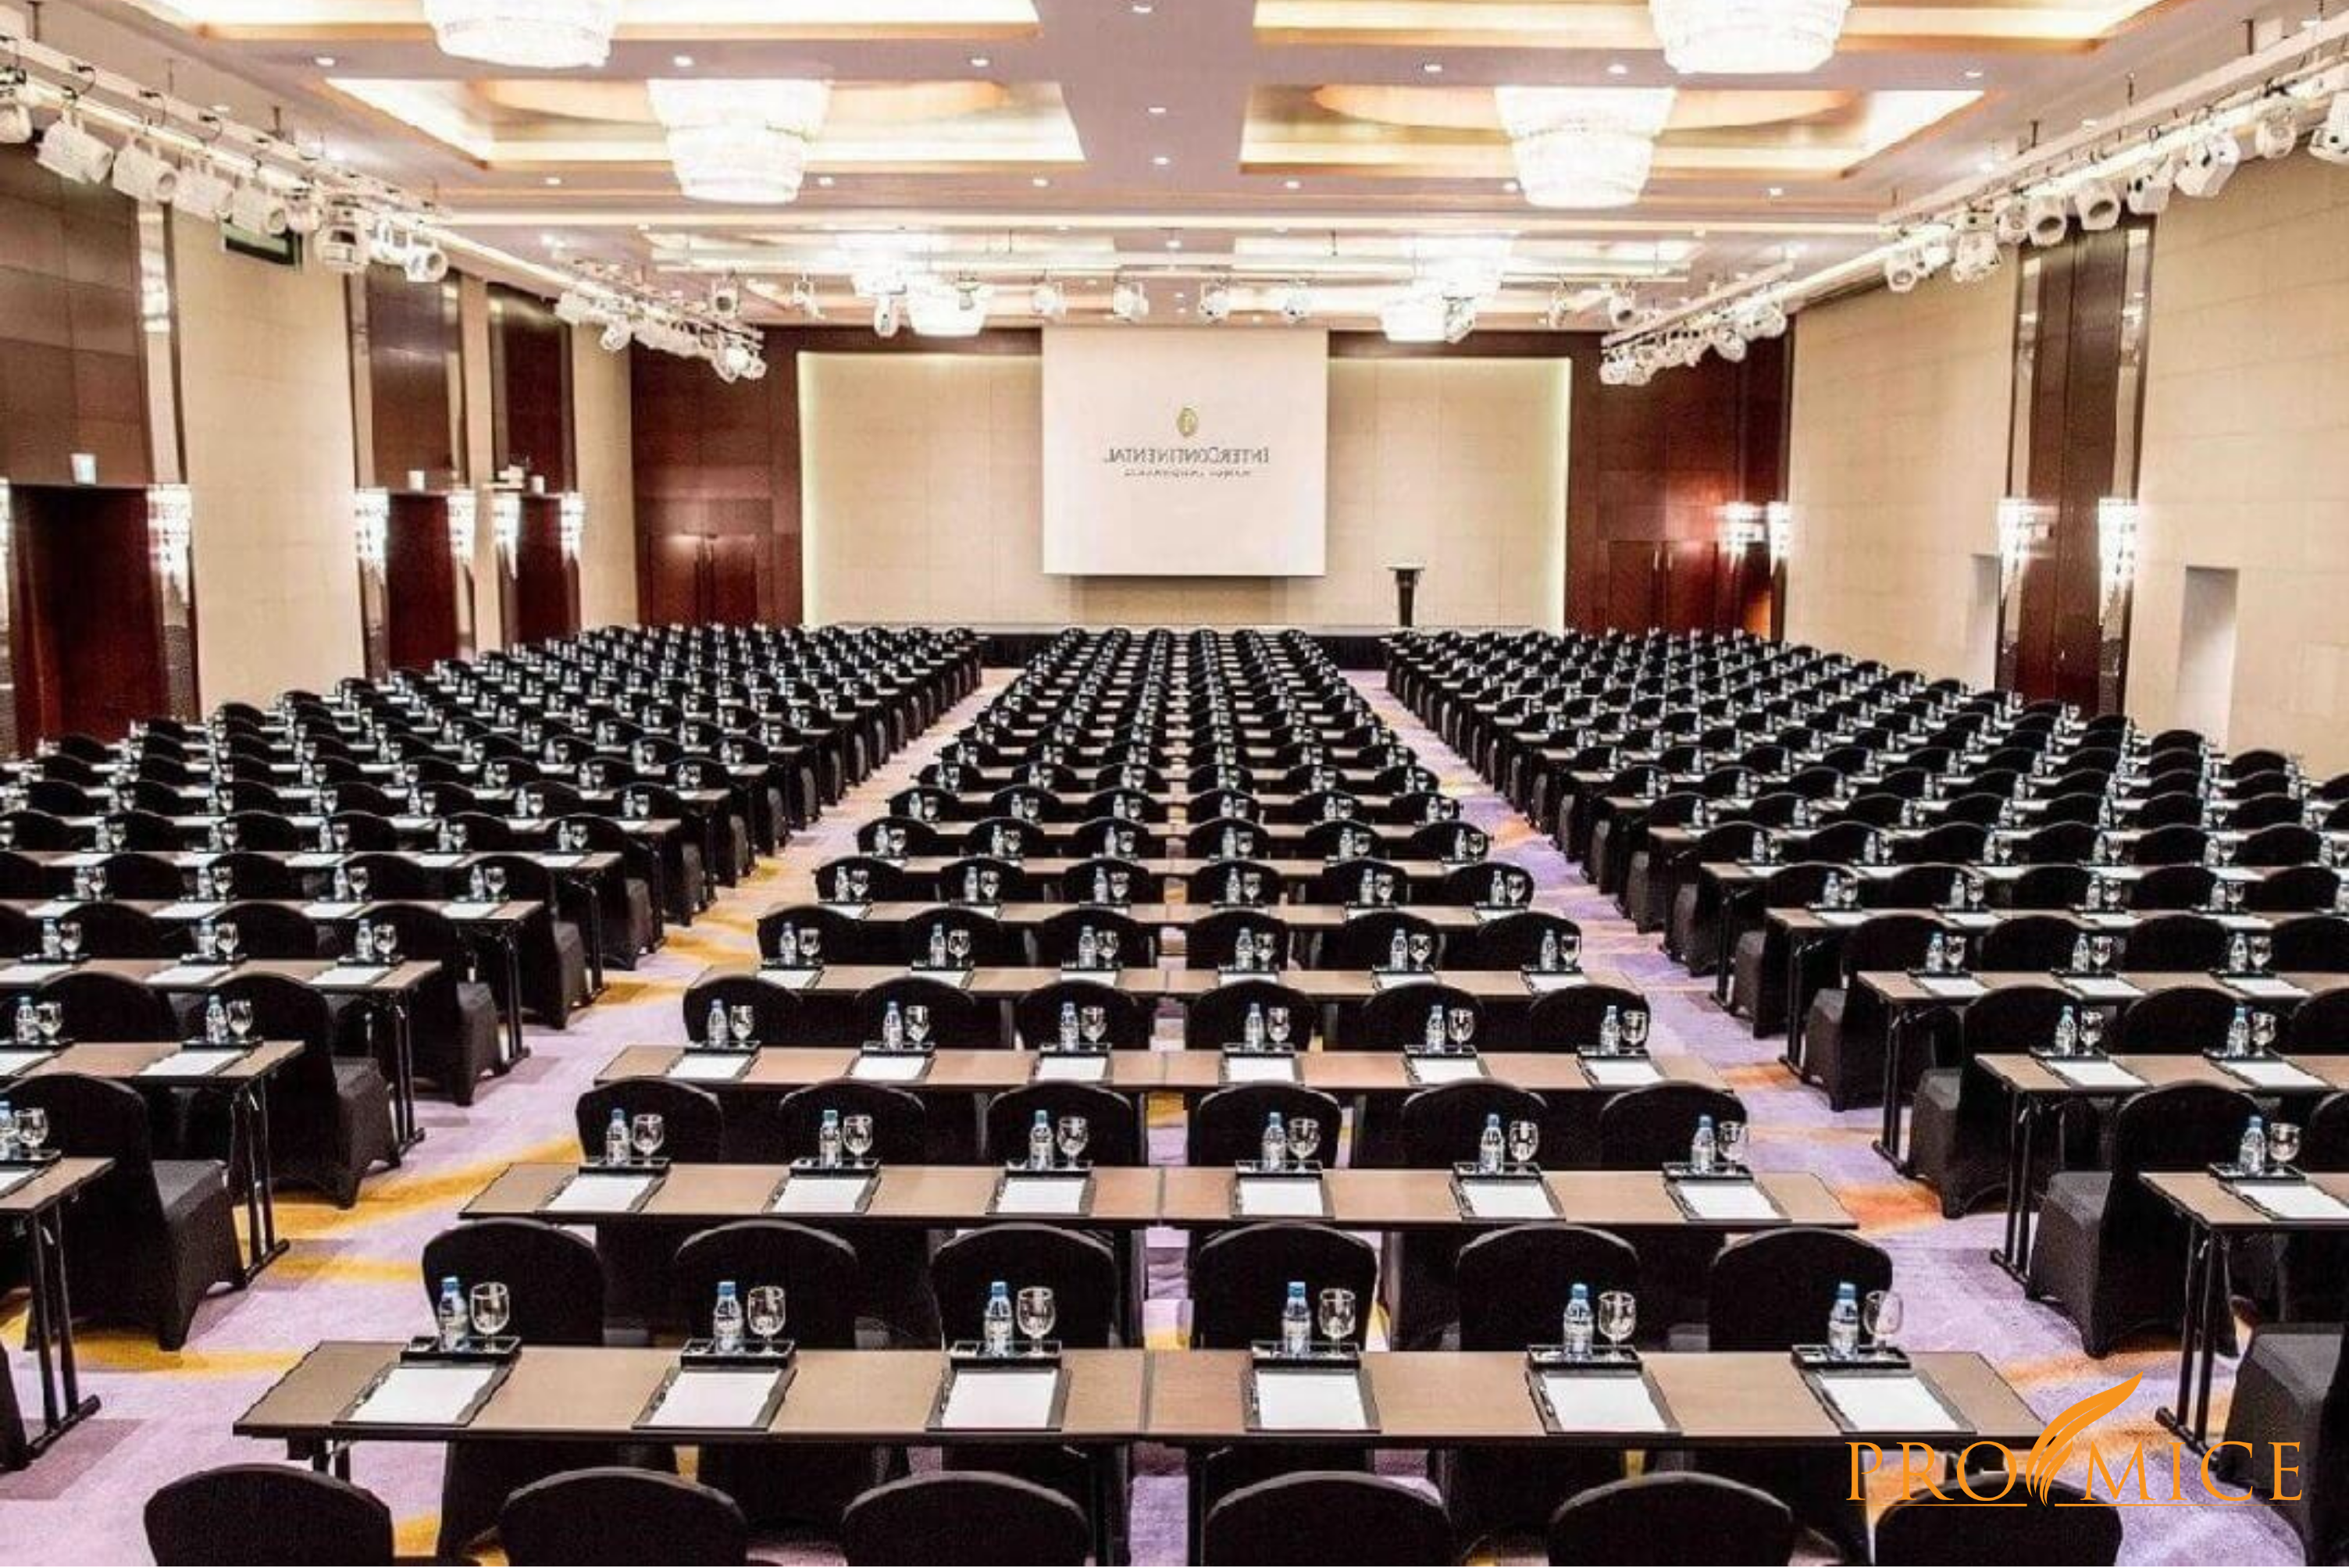 Hướng dẫn 5 kiểu sắp xếp bàn ghế phù hợp với không gian Tổ chức  Hội nghị, Hội thảo